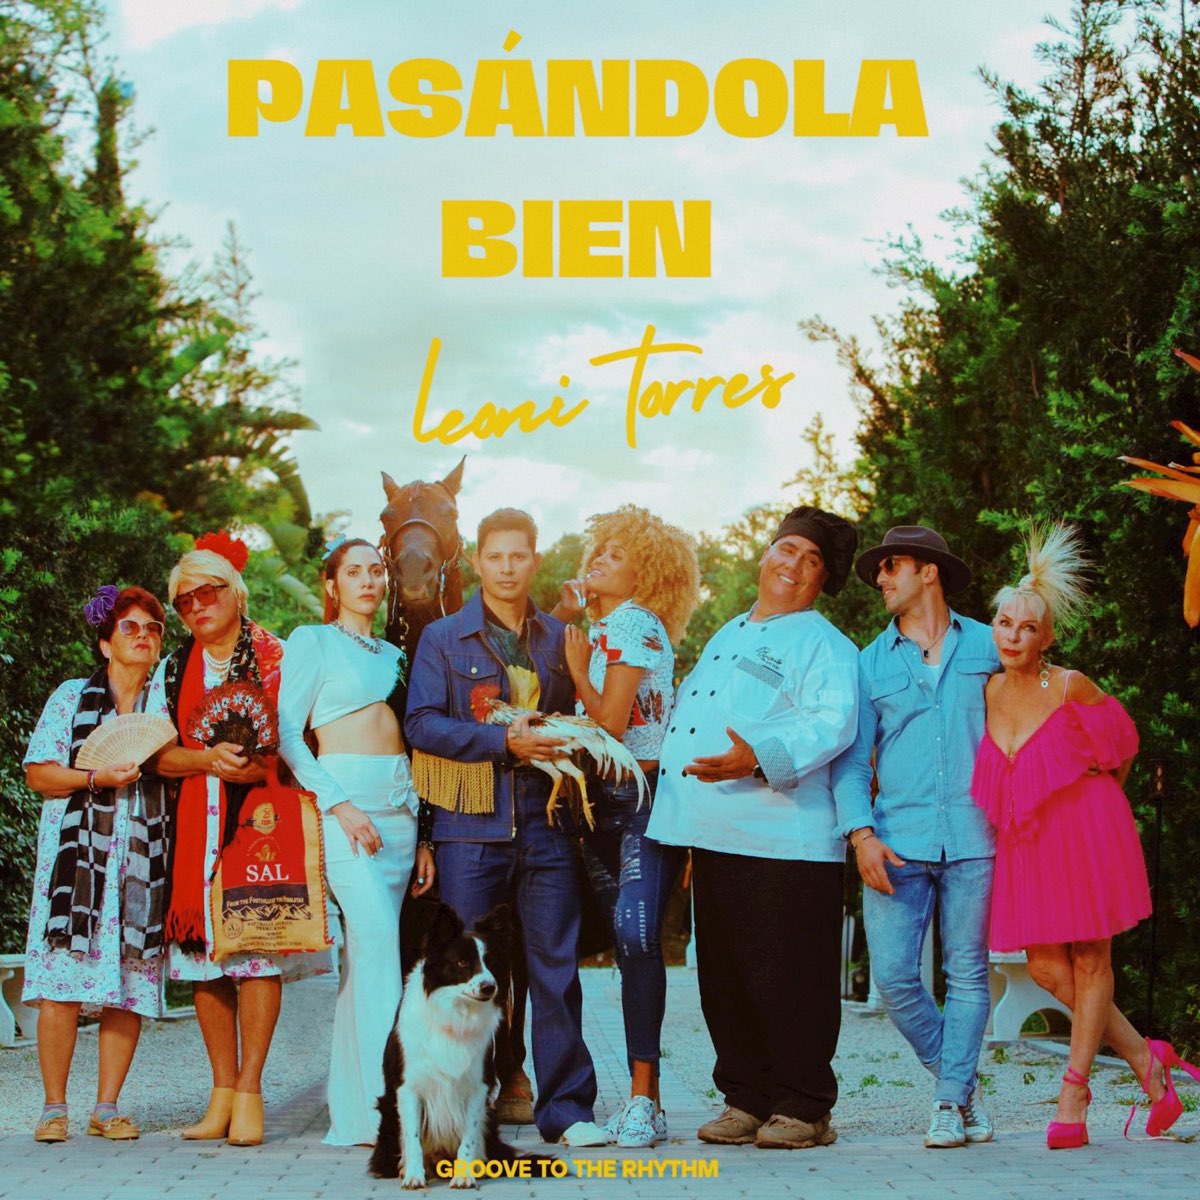 Pasándola bien - EP - Album di Leoni Torres - Apple Music